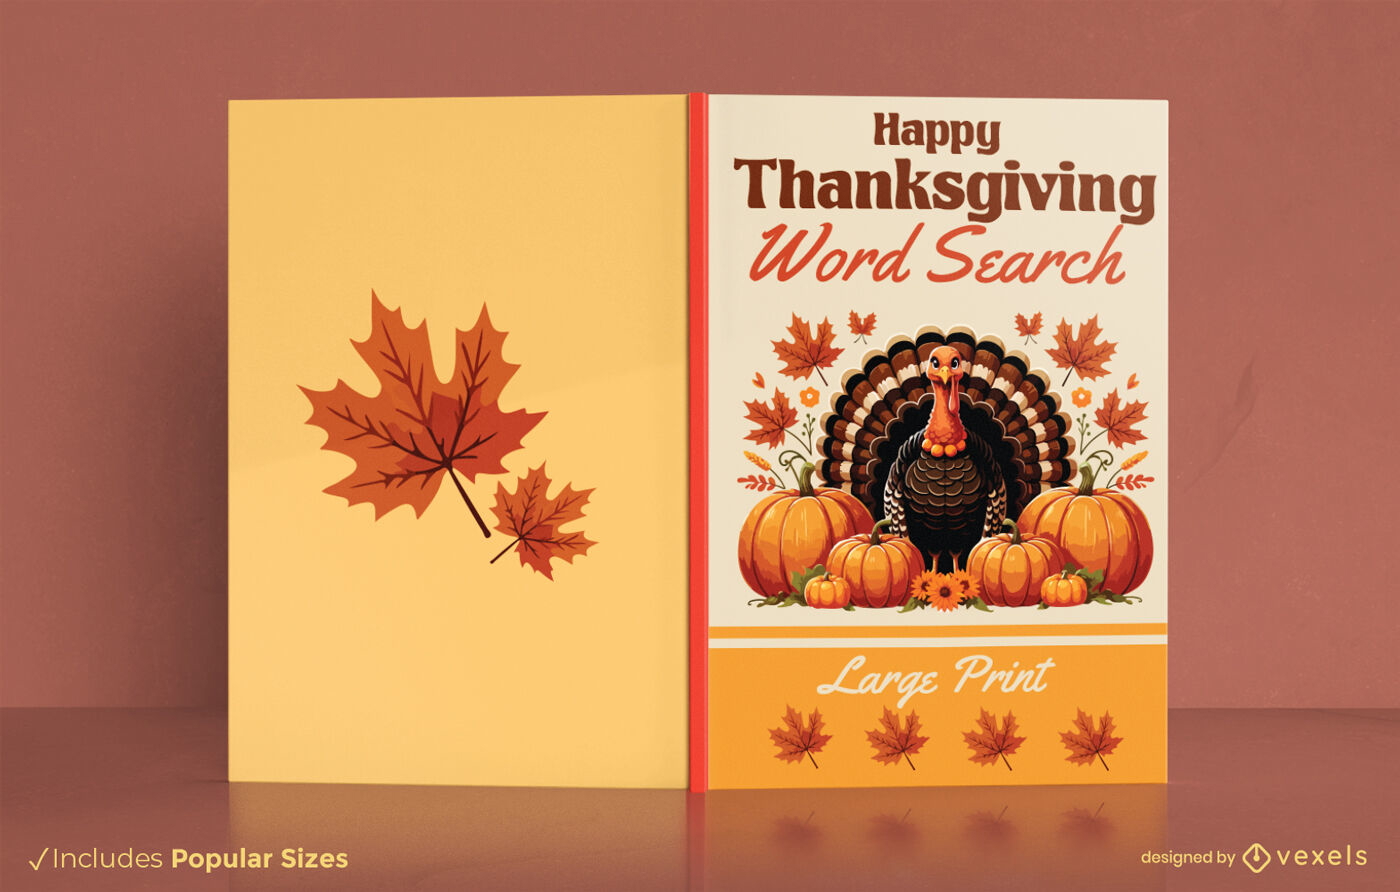 Buchcover-Design mit Thanksgiving-Wortsuche